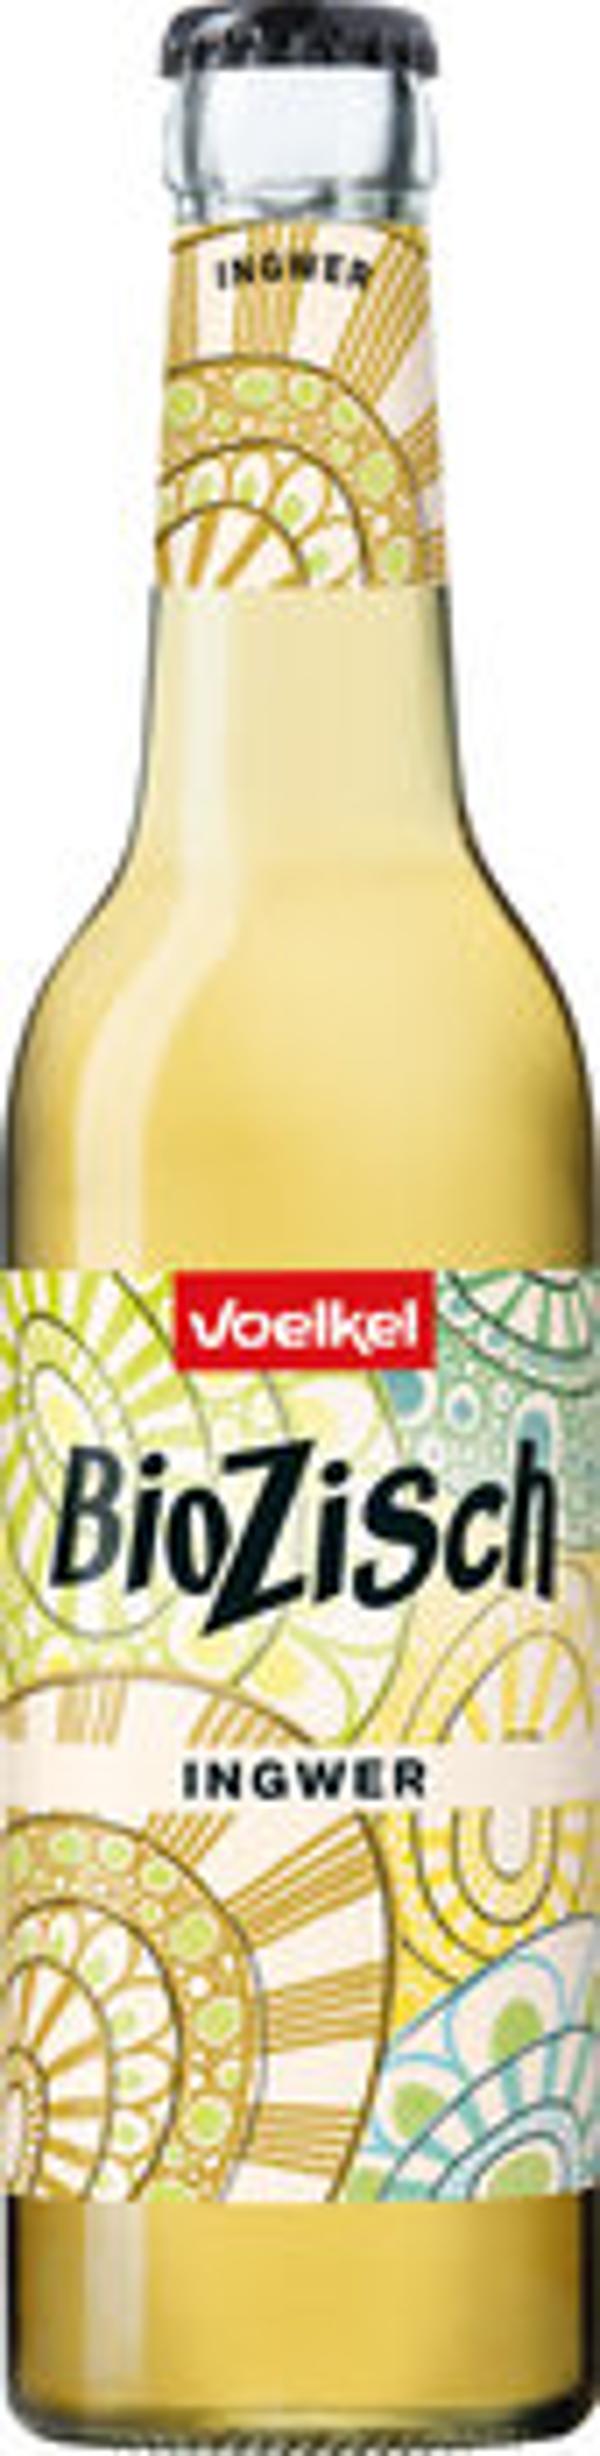 Produktfoto zu Voelkel Bio Zisch Ingwer 0,33l